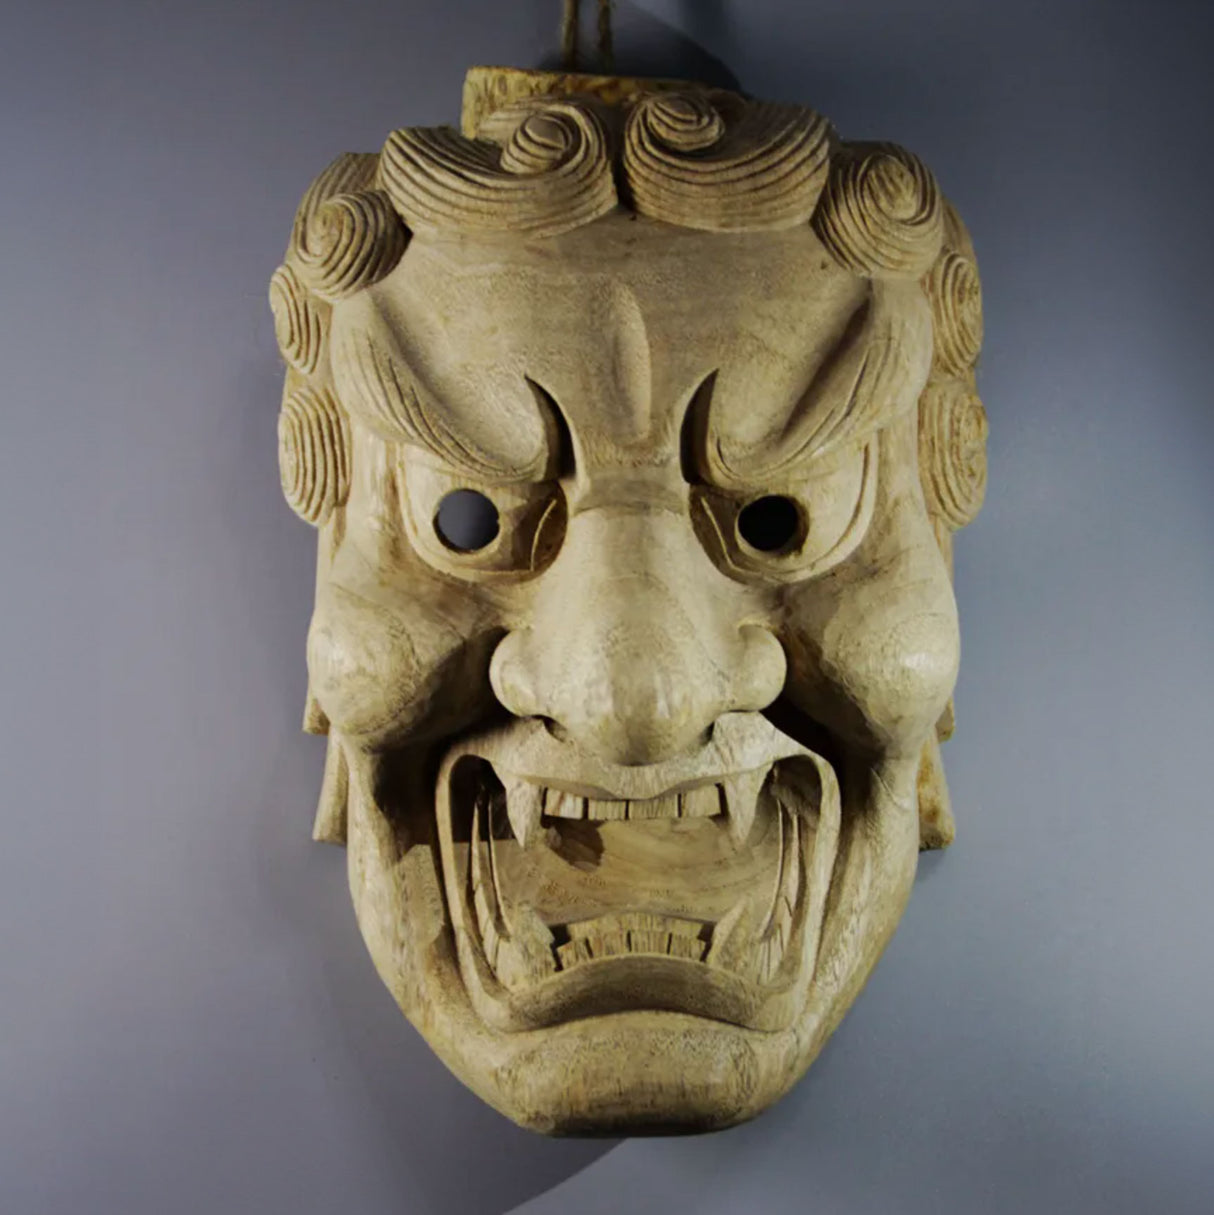 Masque japonais en bois démoniaque (masque décoratif)